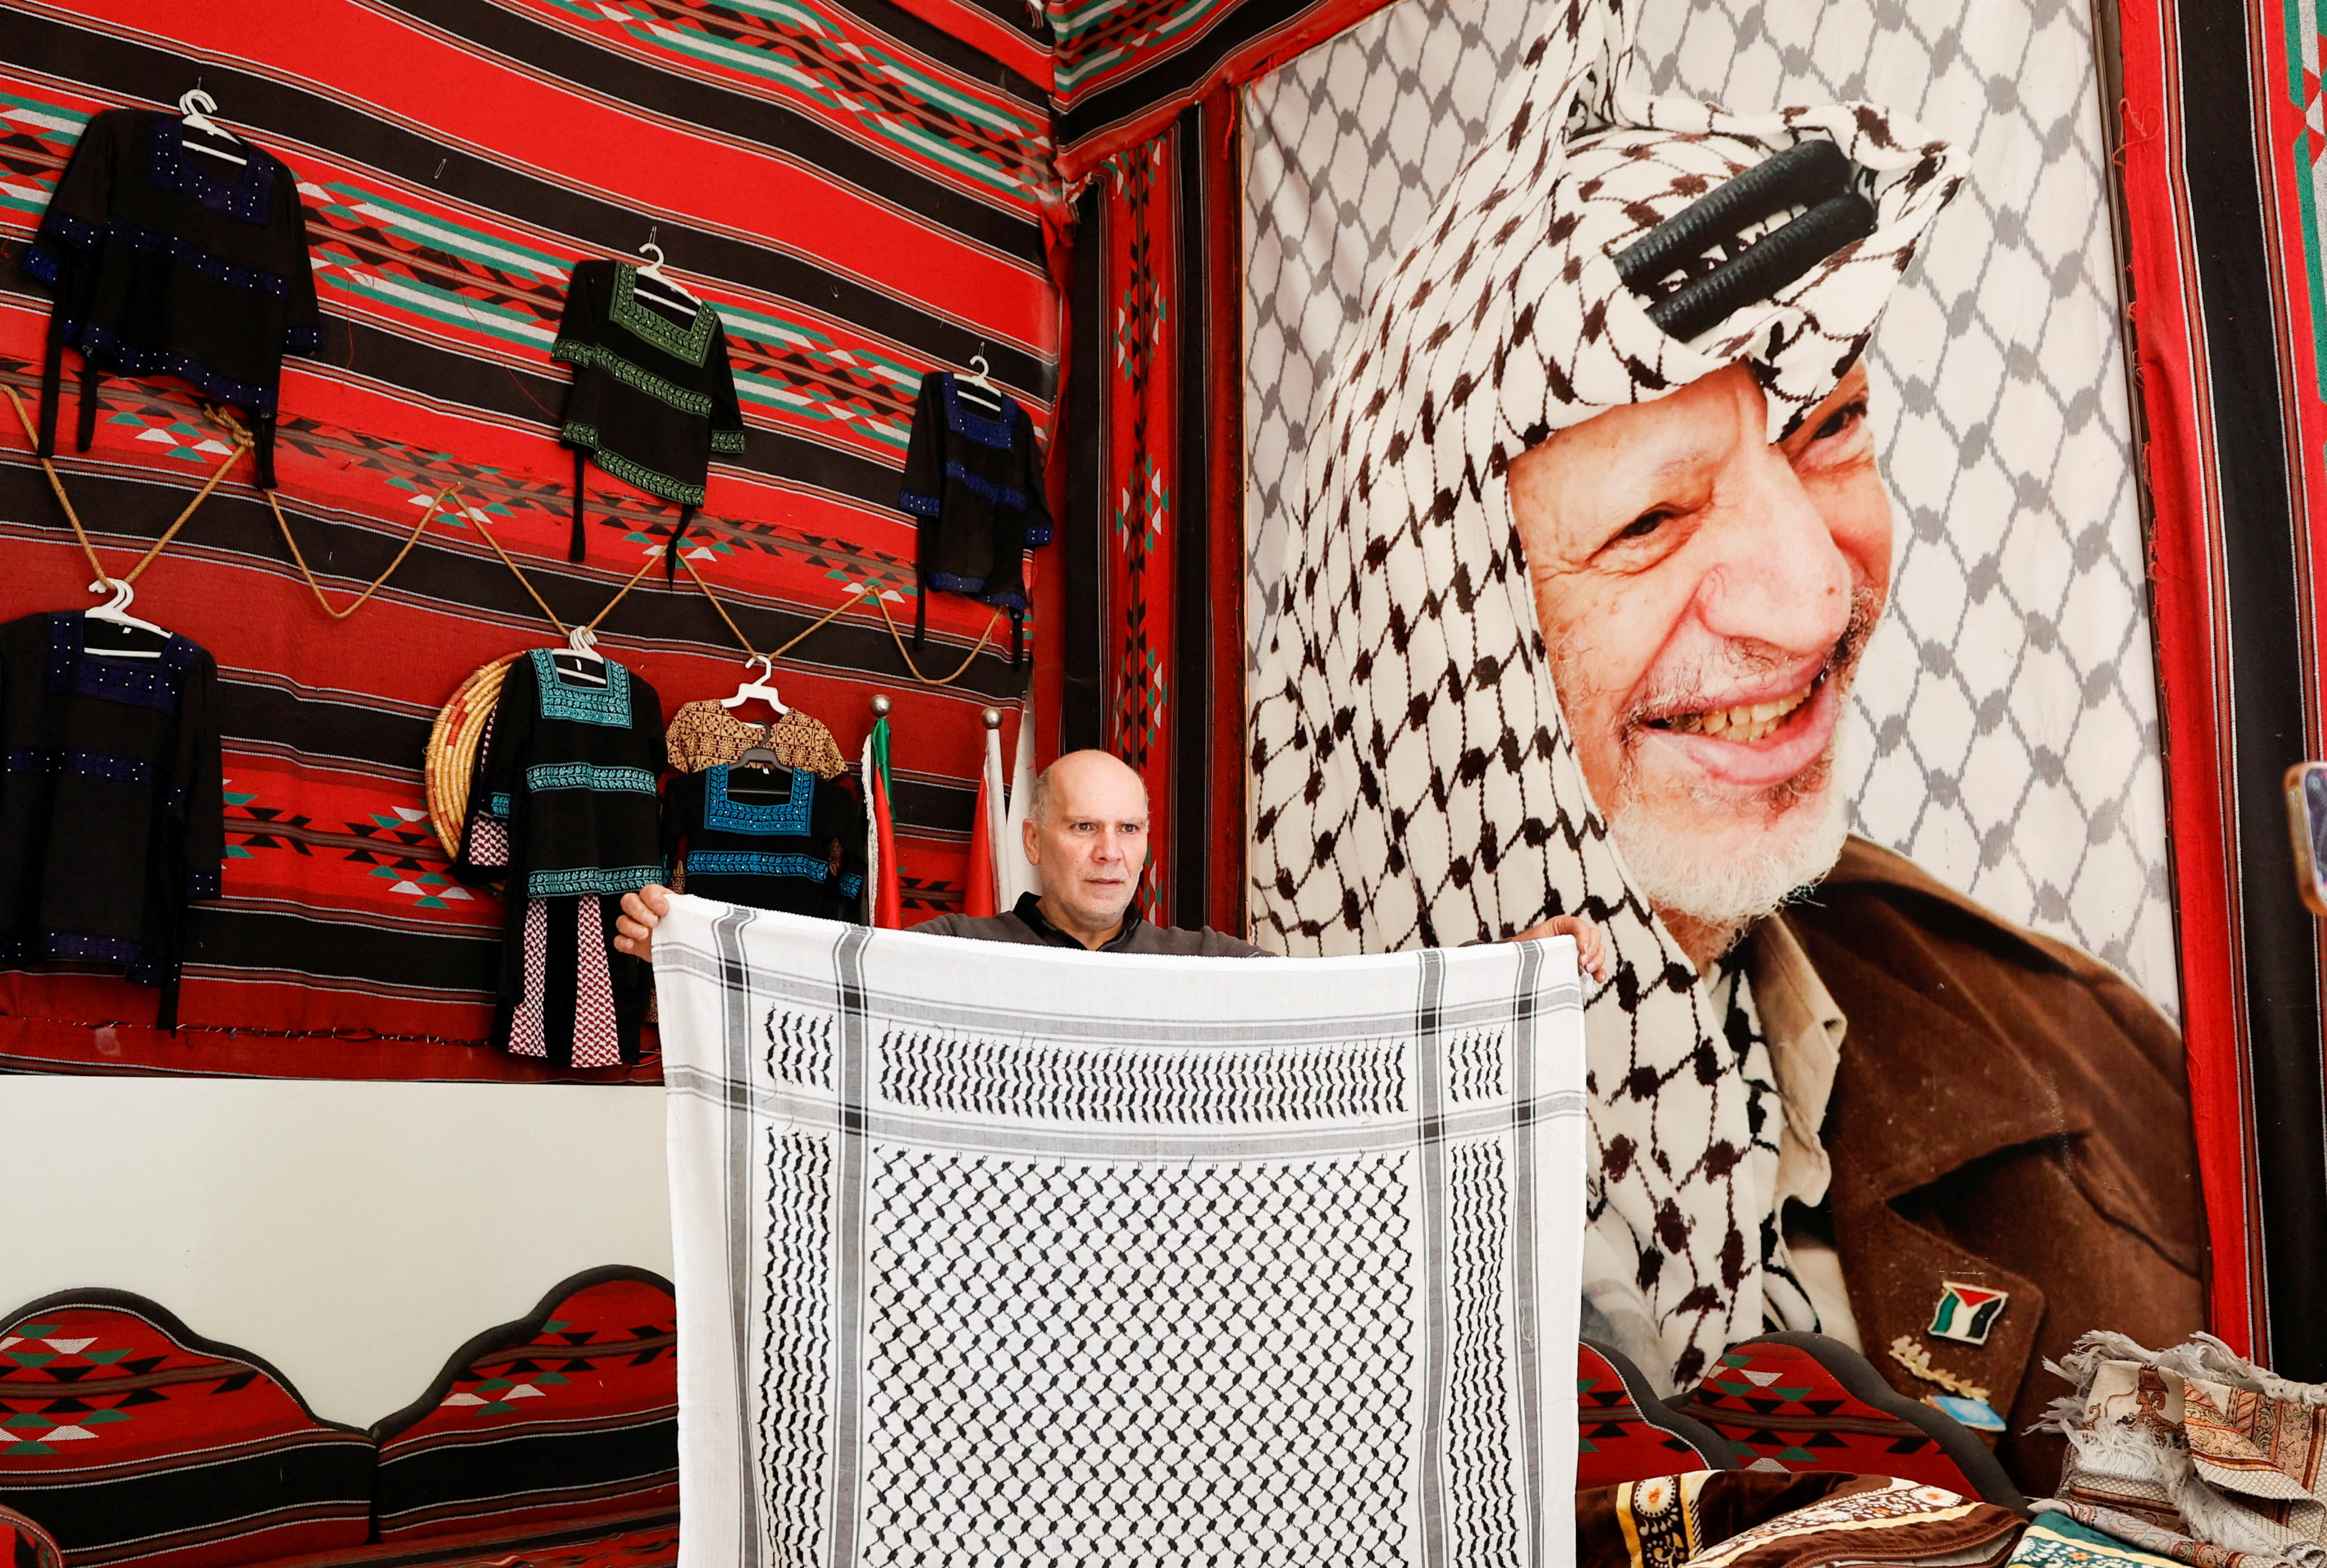 US sales of Palestinian keffiyehs soar, even as wearers targeted